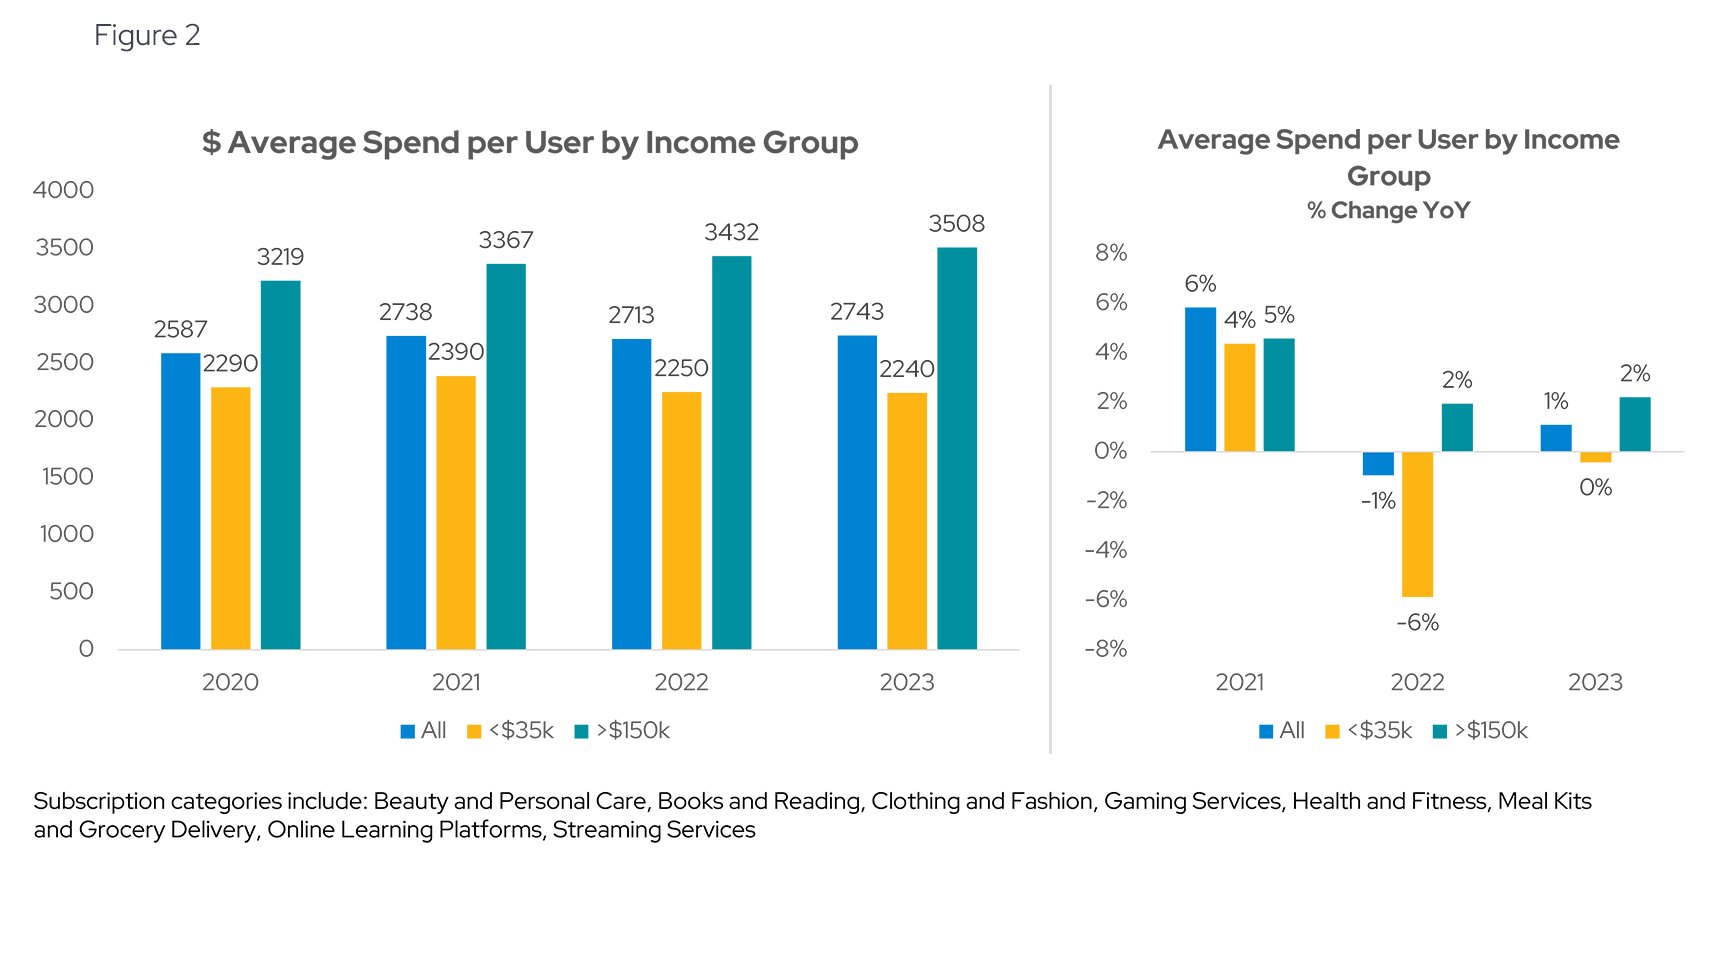 Increased spending per user